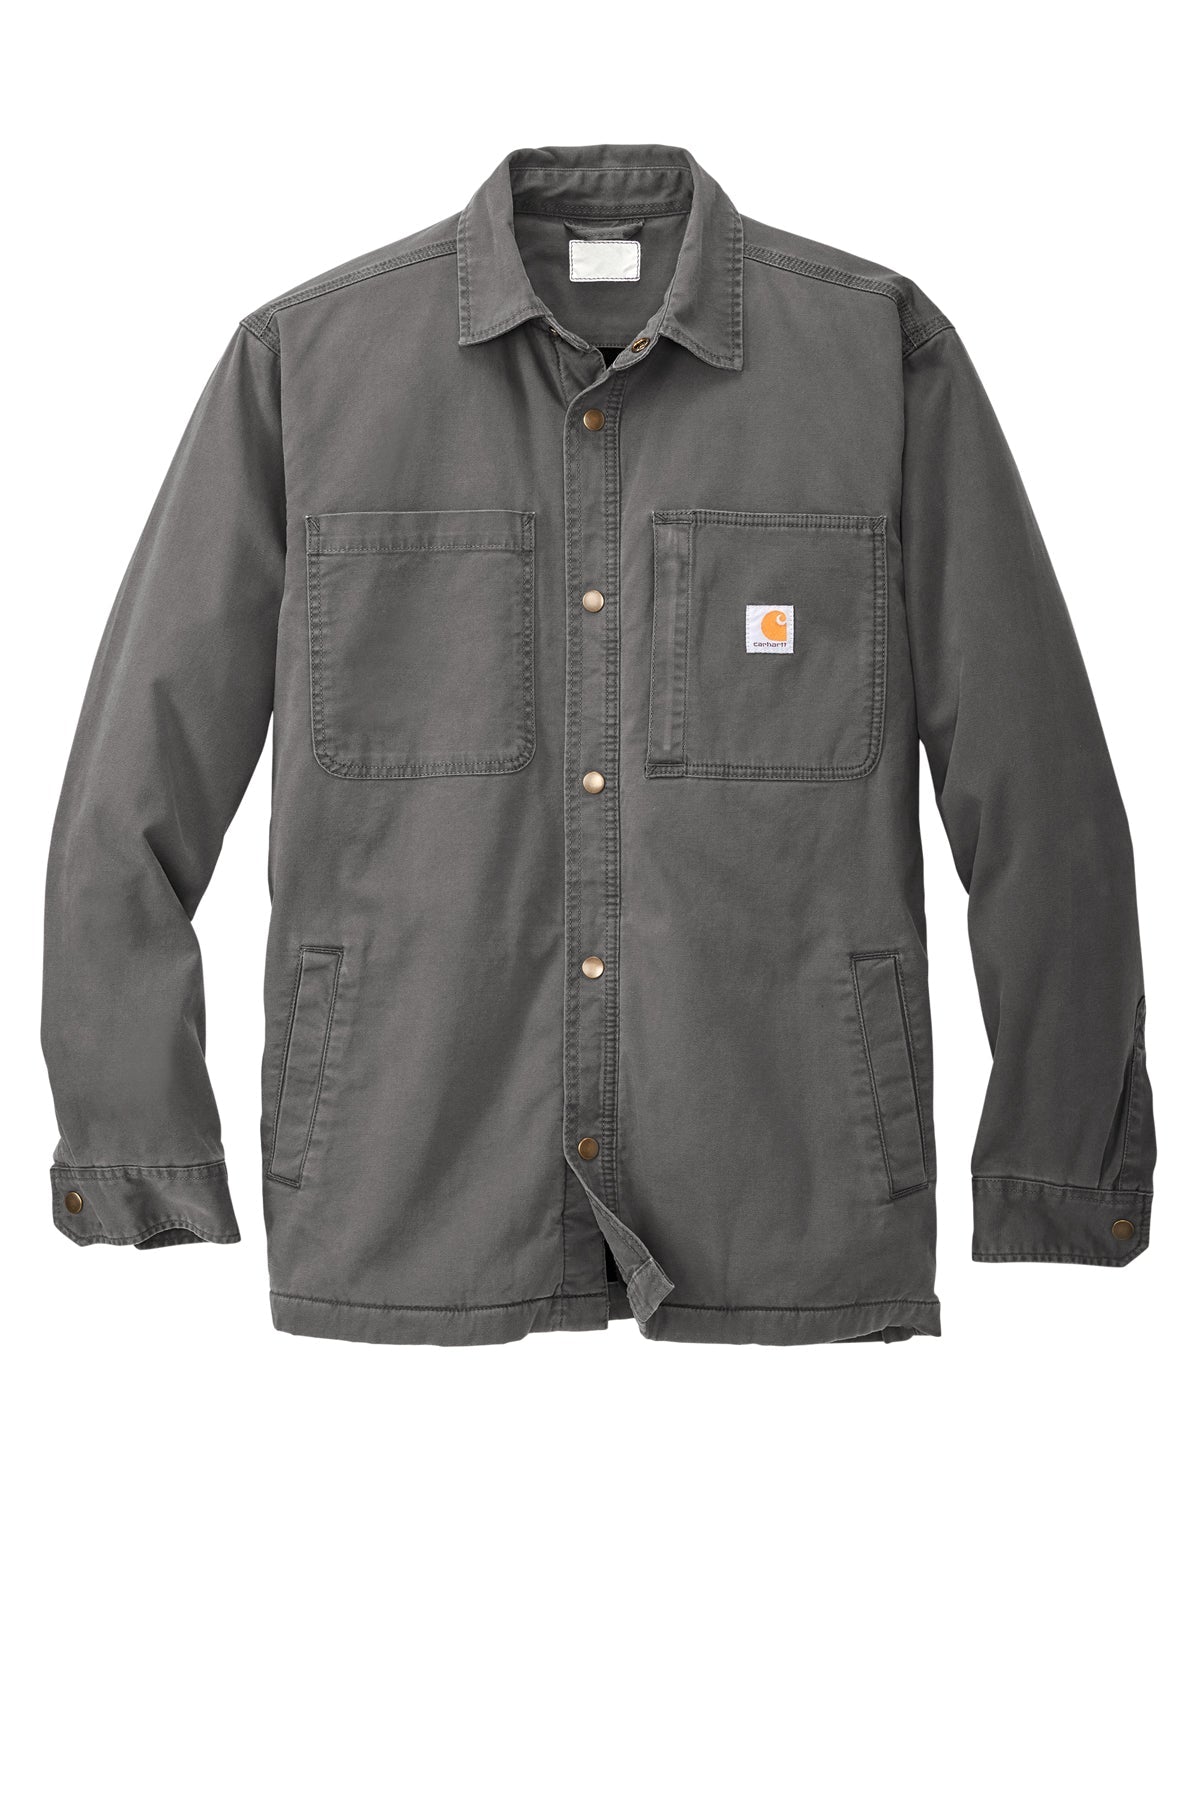 Carhartt® - Rugged Flex® Fleece-Lined Shirt Jac - CT105532